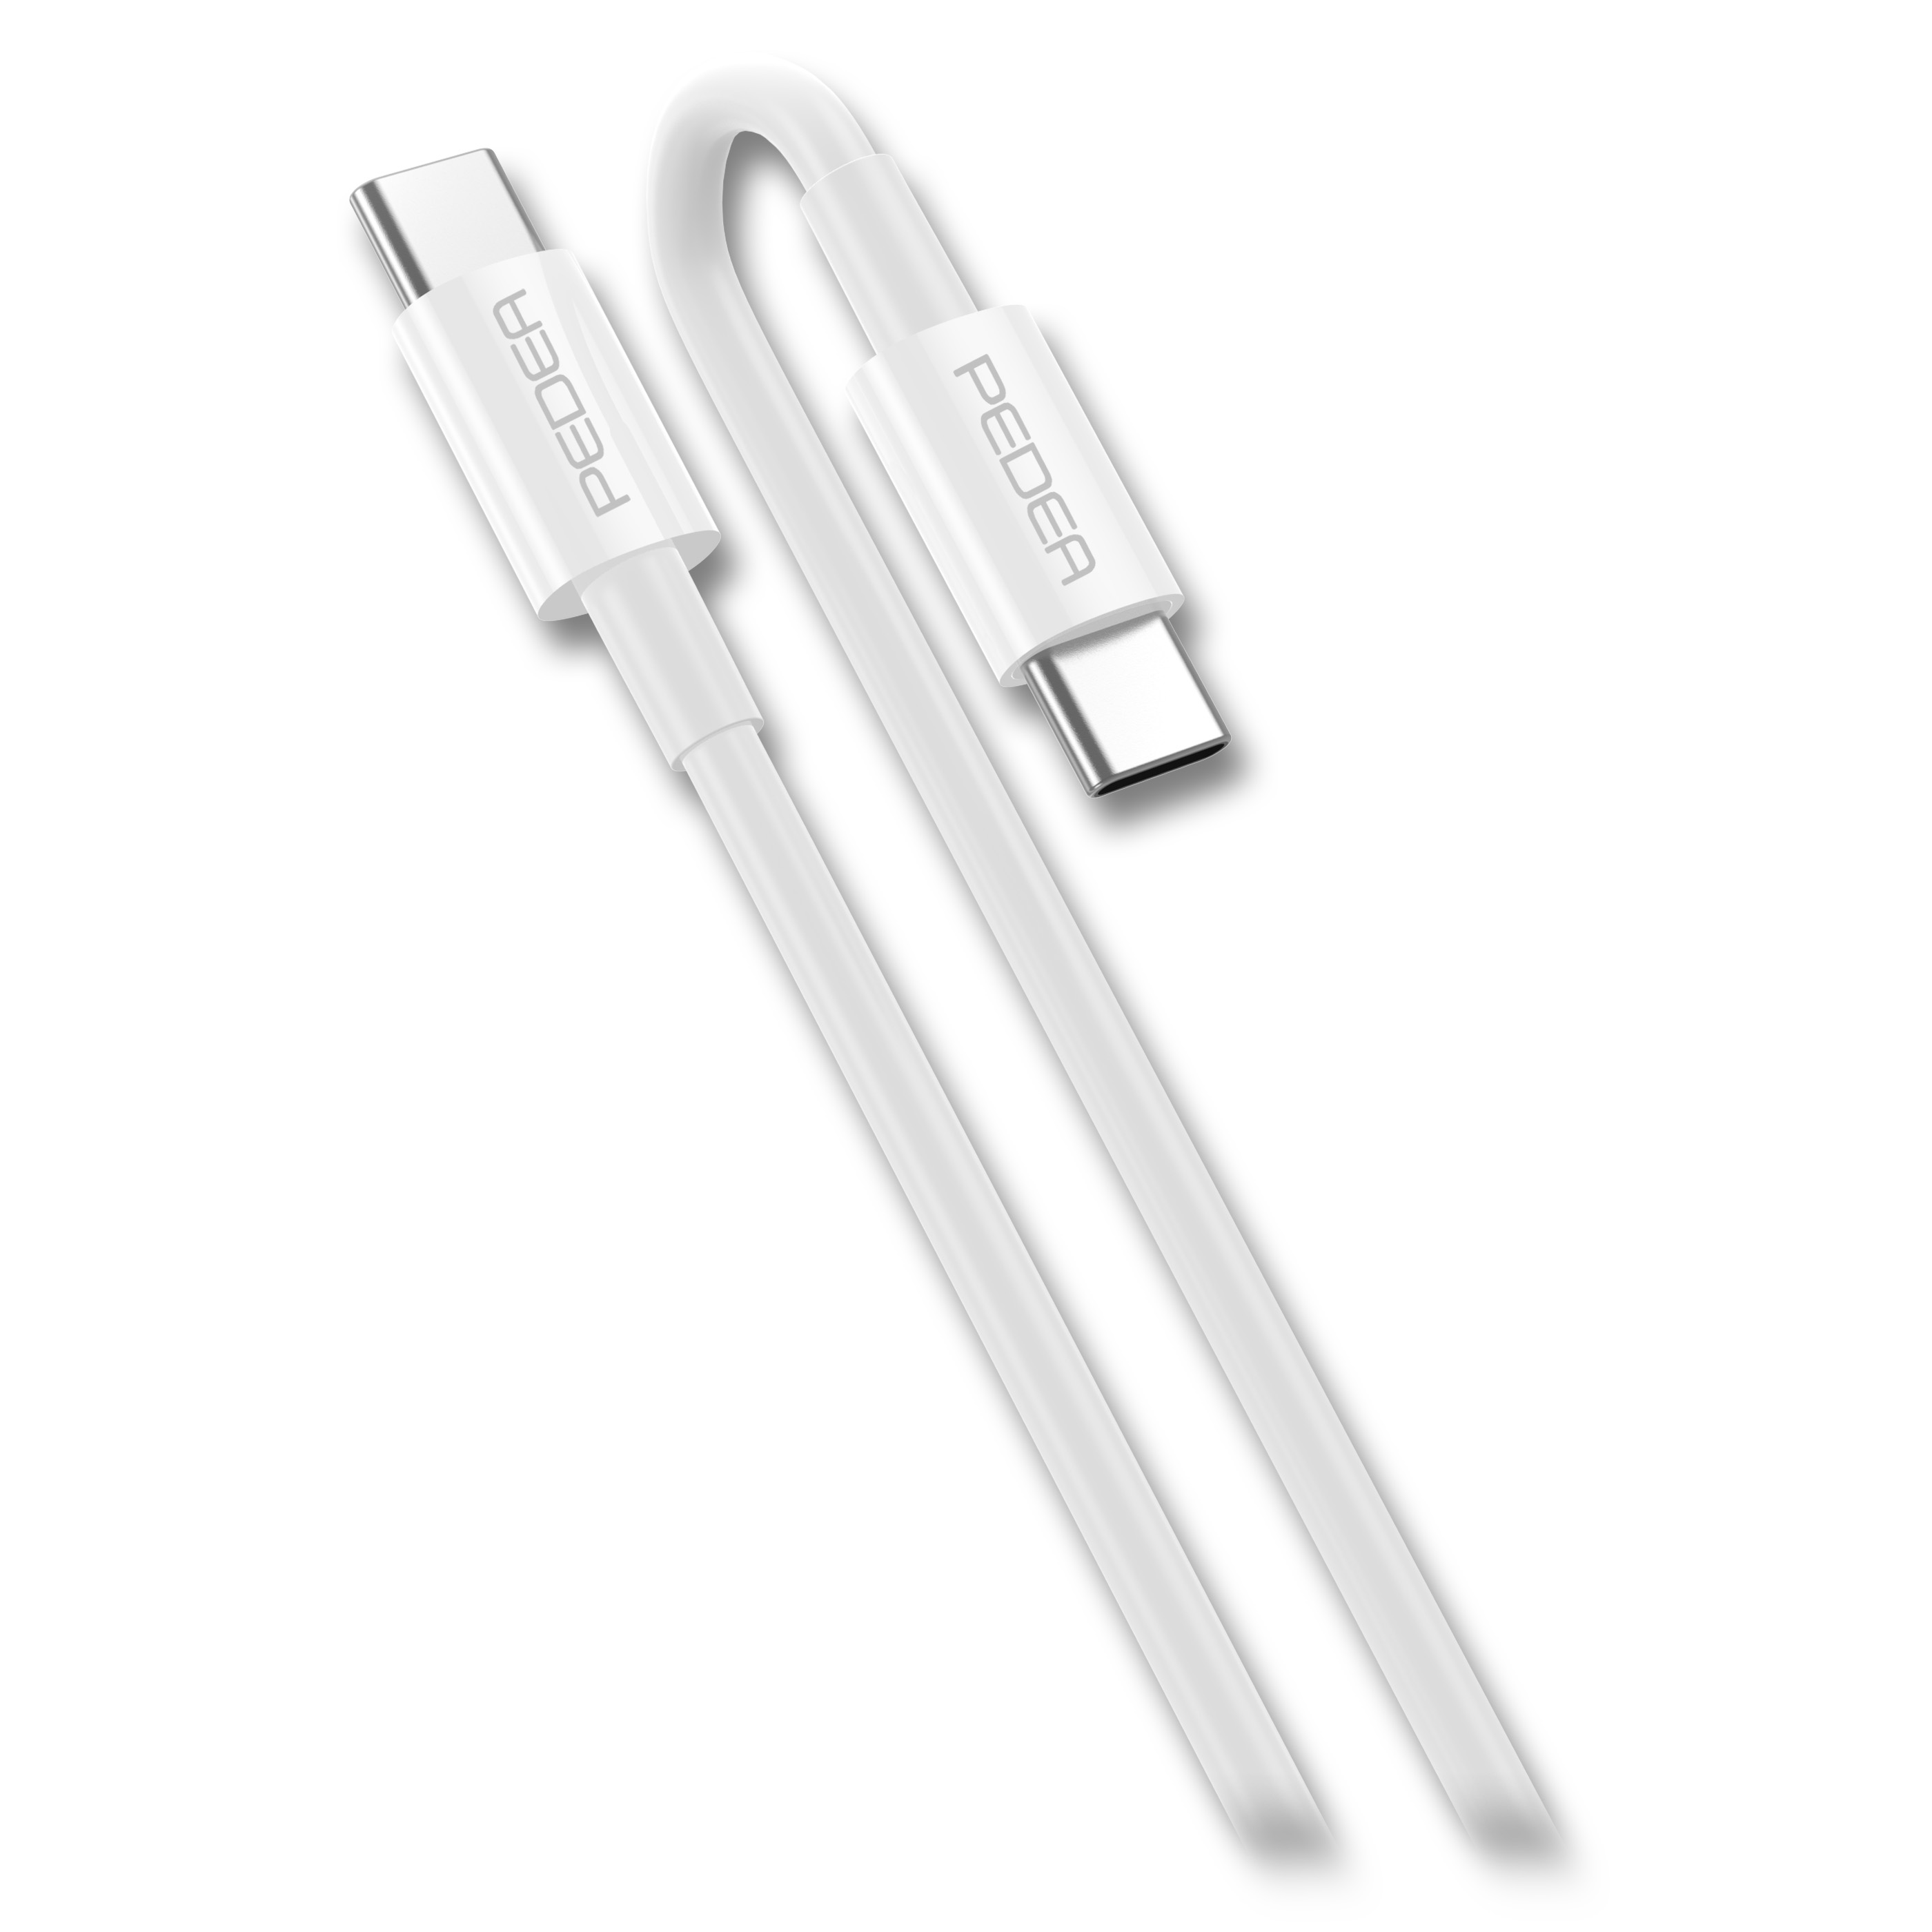 Daten-/Ladekabel 1 USB-C/USB-C Meter Weiß PEDEA Übertragungsrate und Mbit/s Länge, Daten- 480 Schnellladekabel,